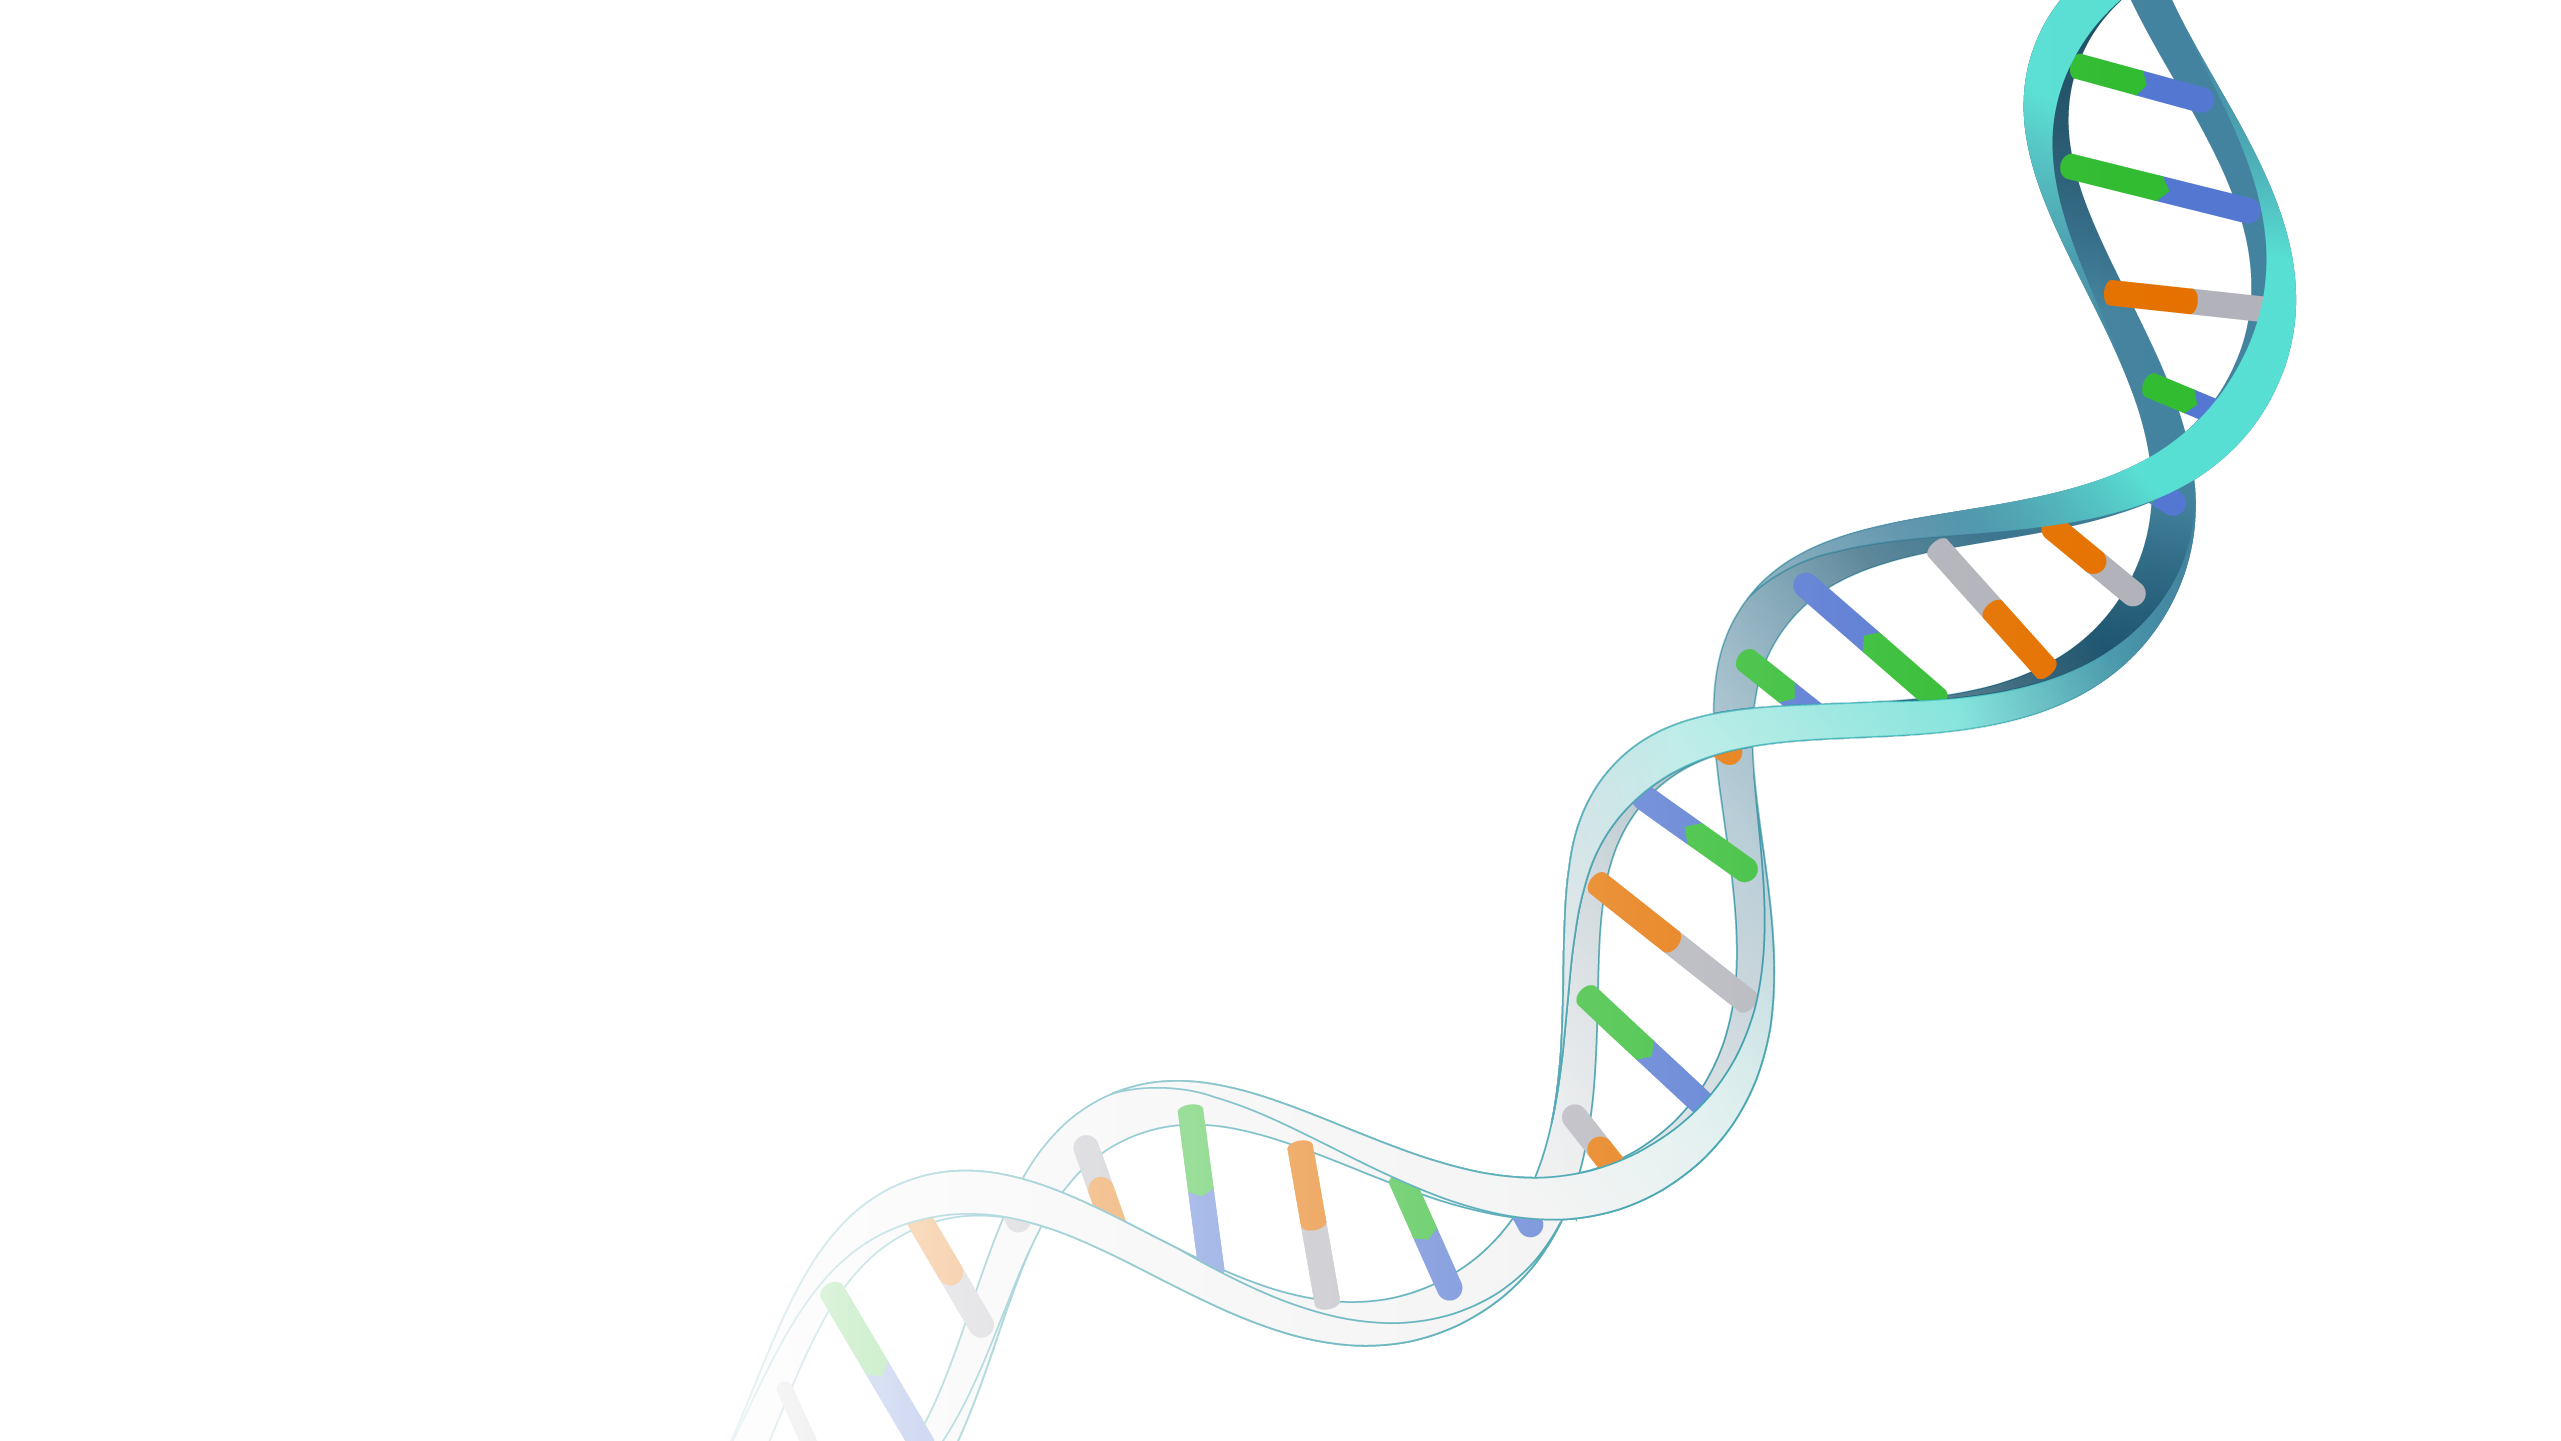 Non-Coding DNA